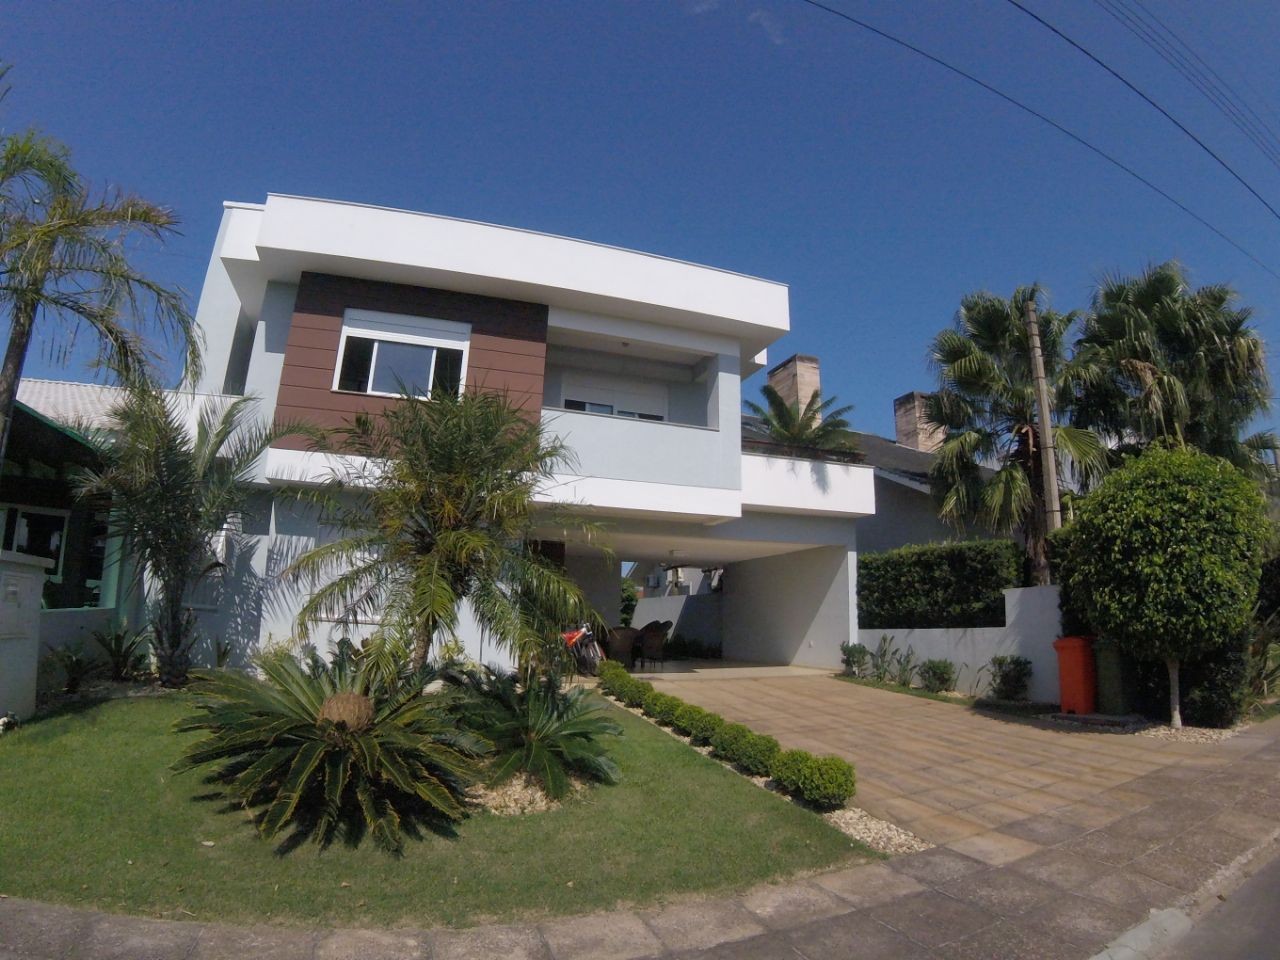 Casa em Condomínio 4 dormitórios para venda, Zona Nova em Capão da Canoa | Ref.: 41